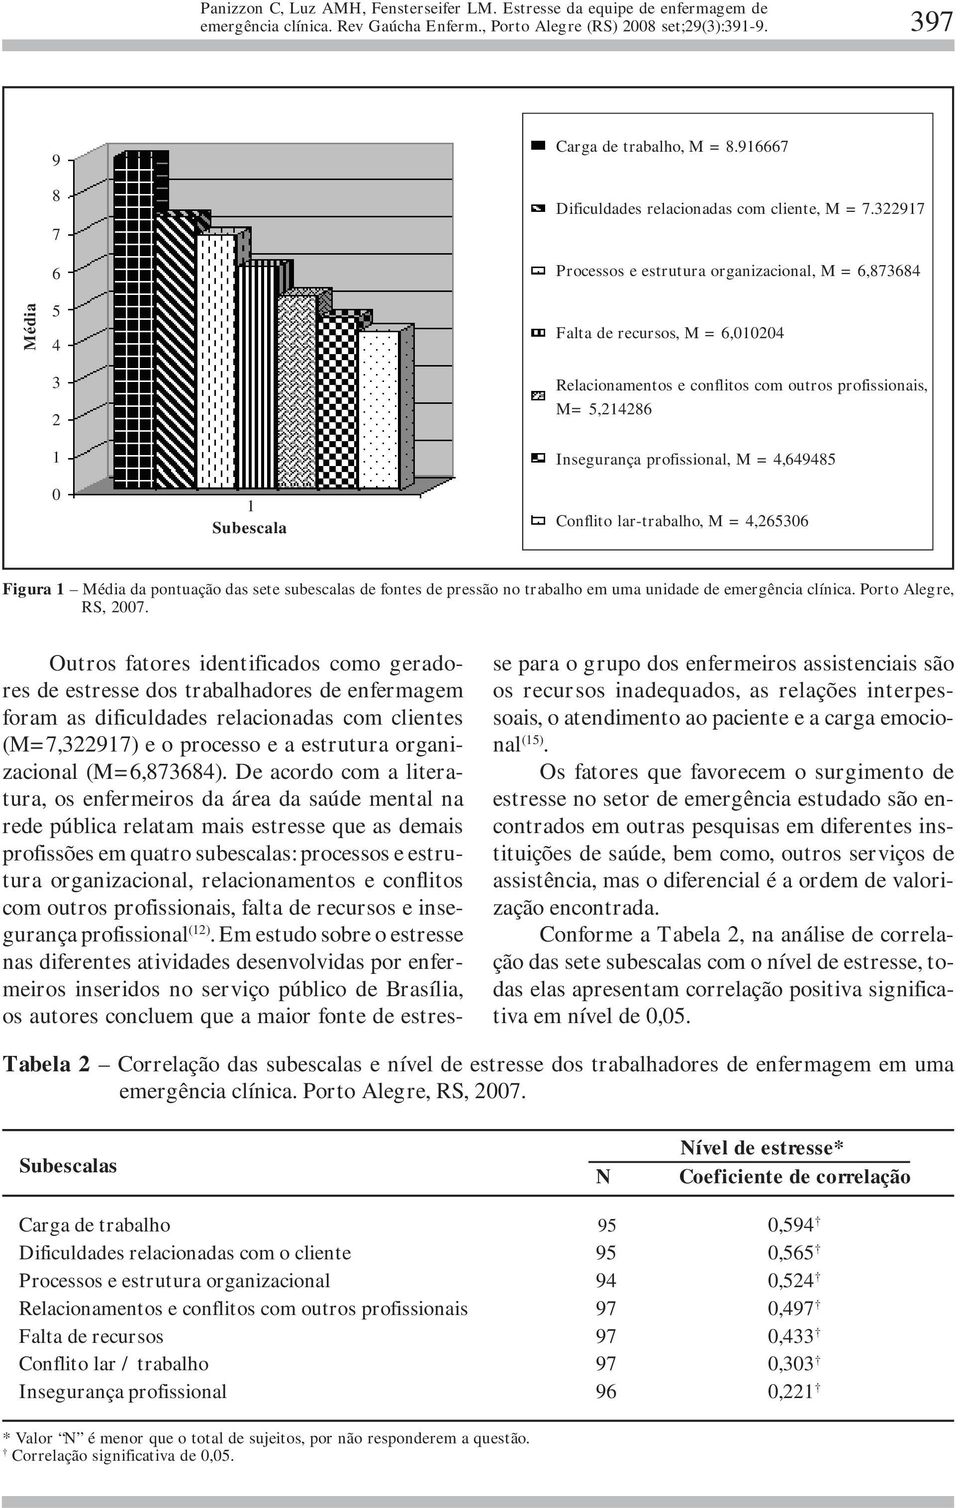 Subescala Conflito lar-trabalho, M = 4,265306 Figura 1 Média da pontuação das sete subescalas de fontes de pressão no trabalho em uma unidade de emergência clínica. Porto Alegre, RS, 2007.